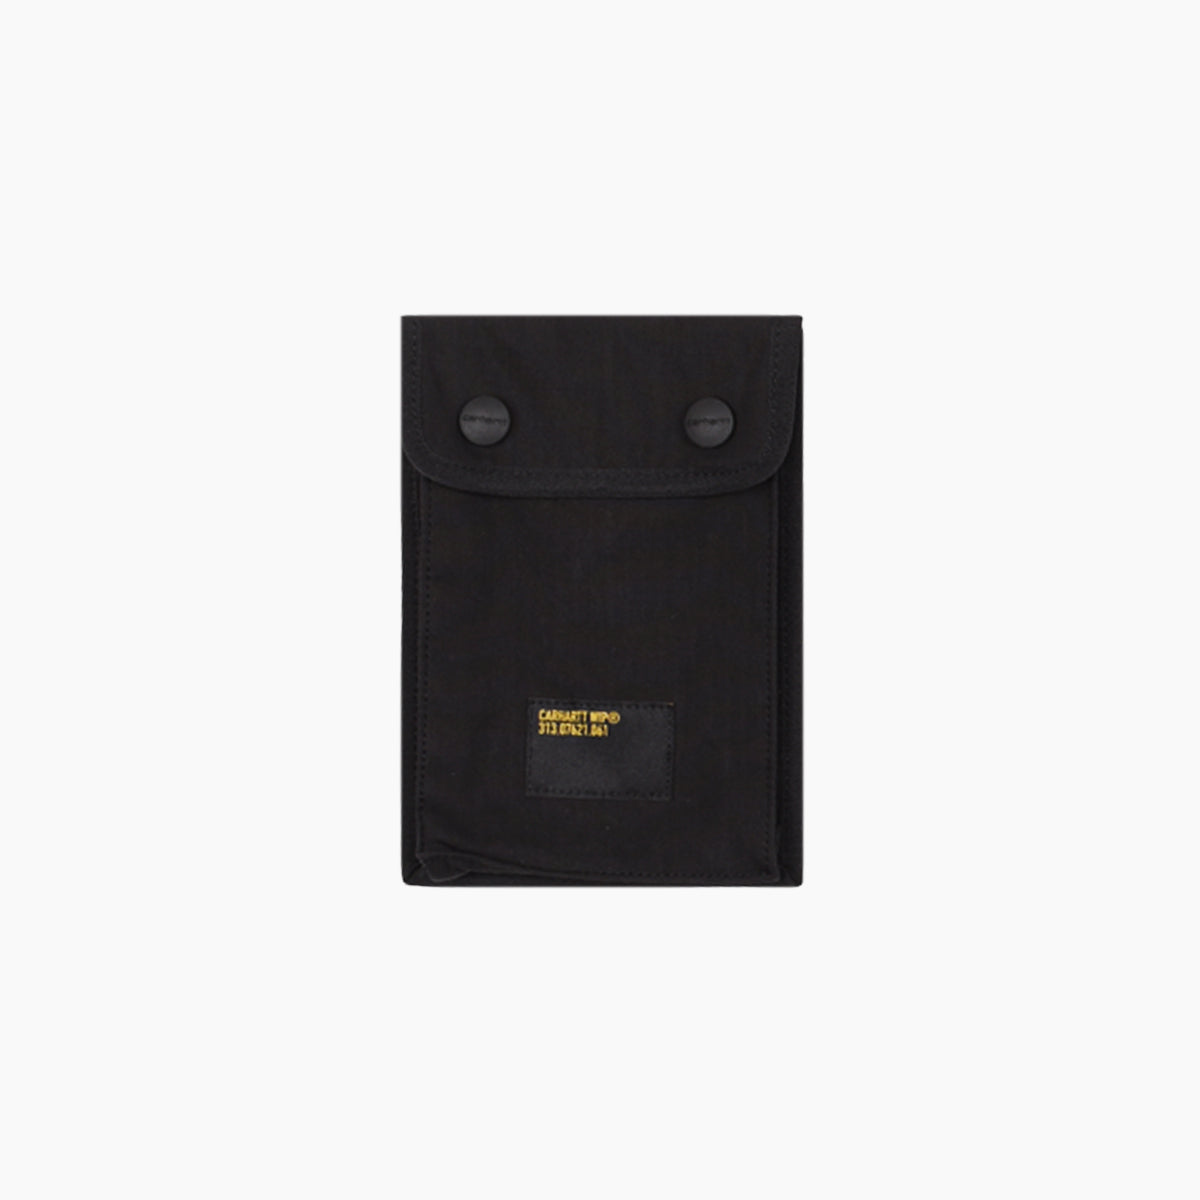 Carhartt WIP Haste Neck Pouch Tasche (black) – Blue Mountain Store